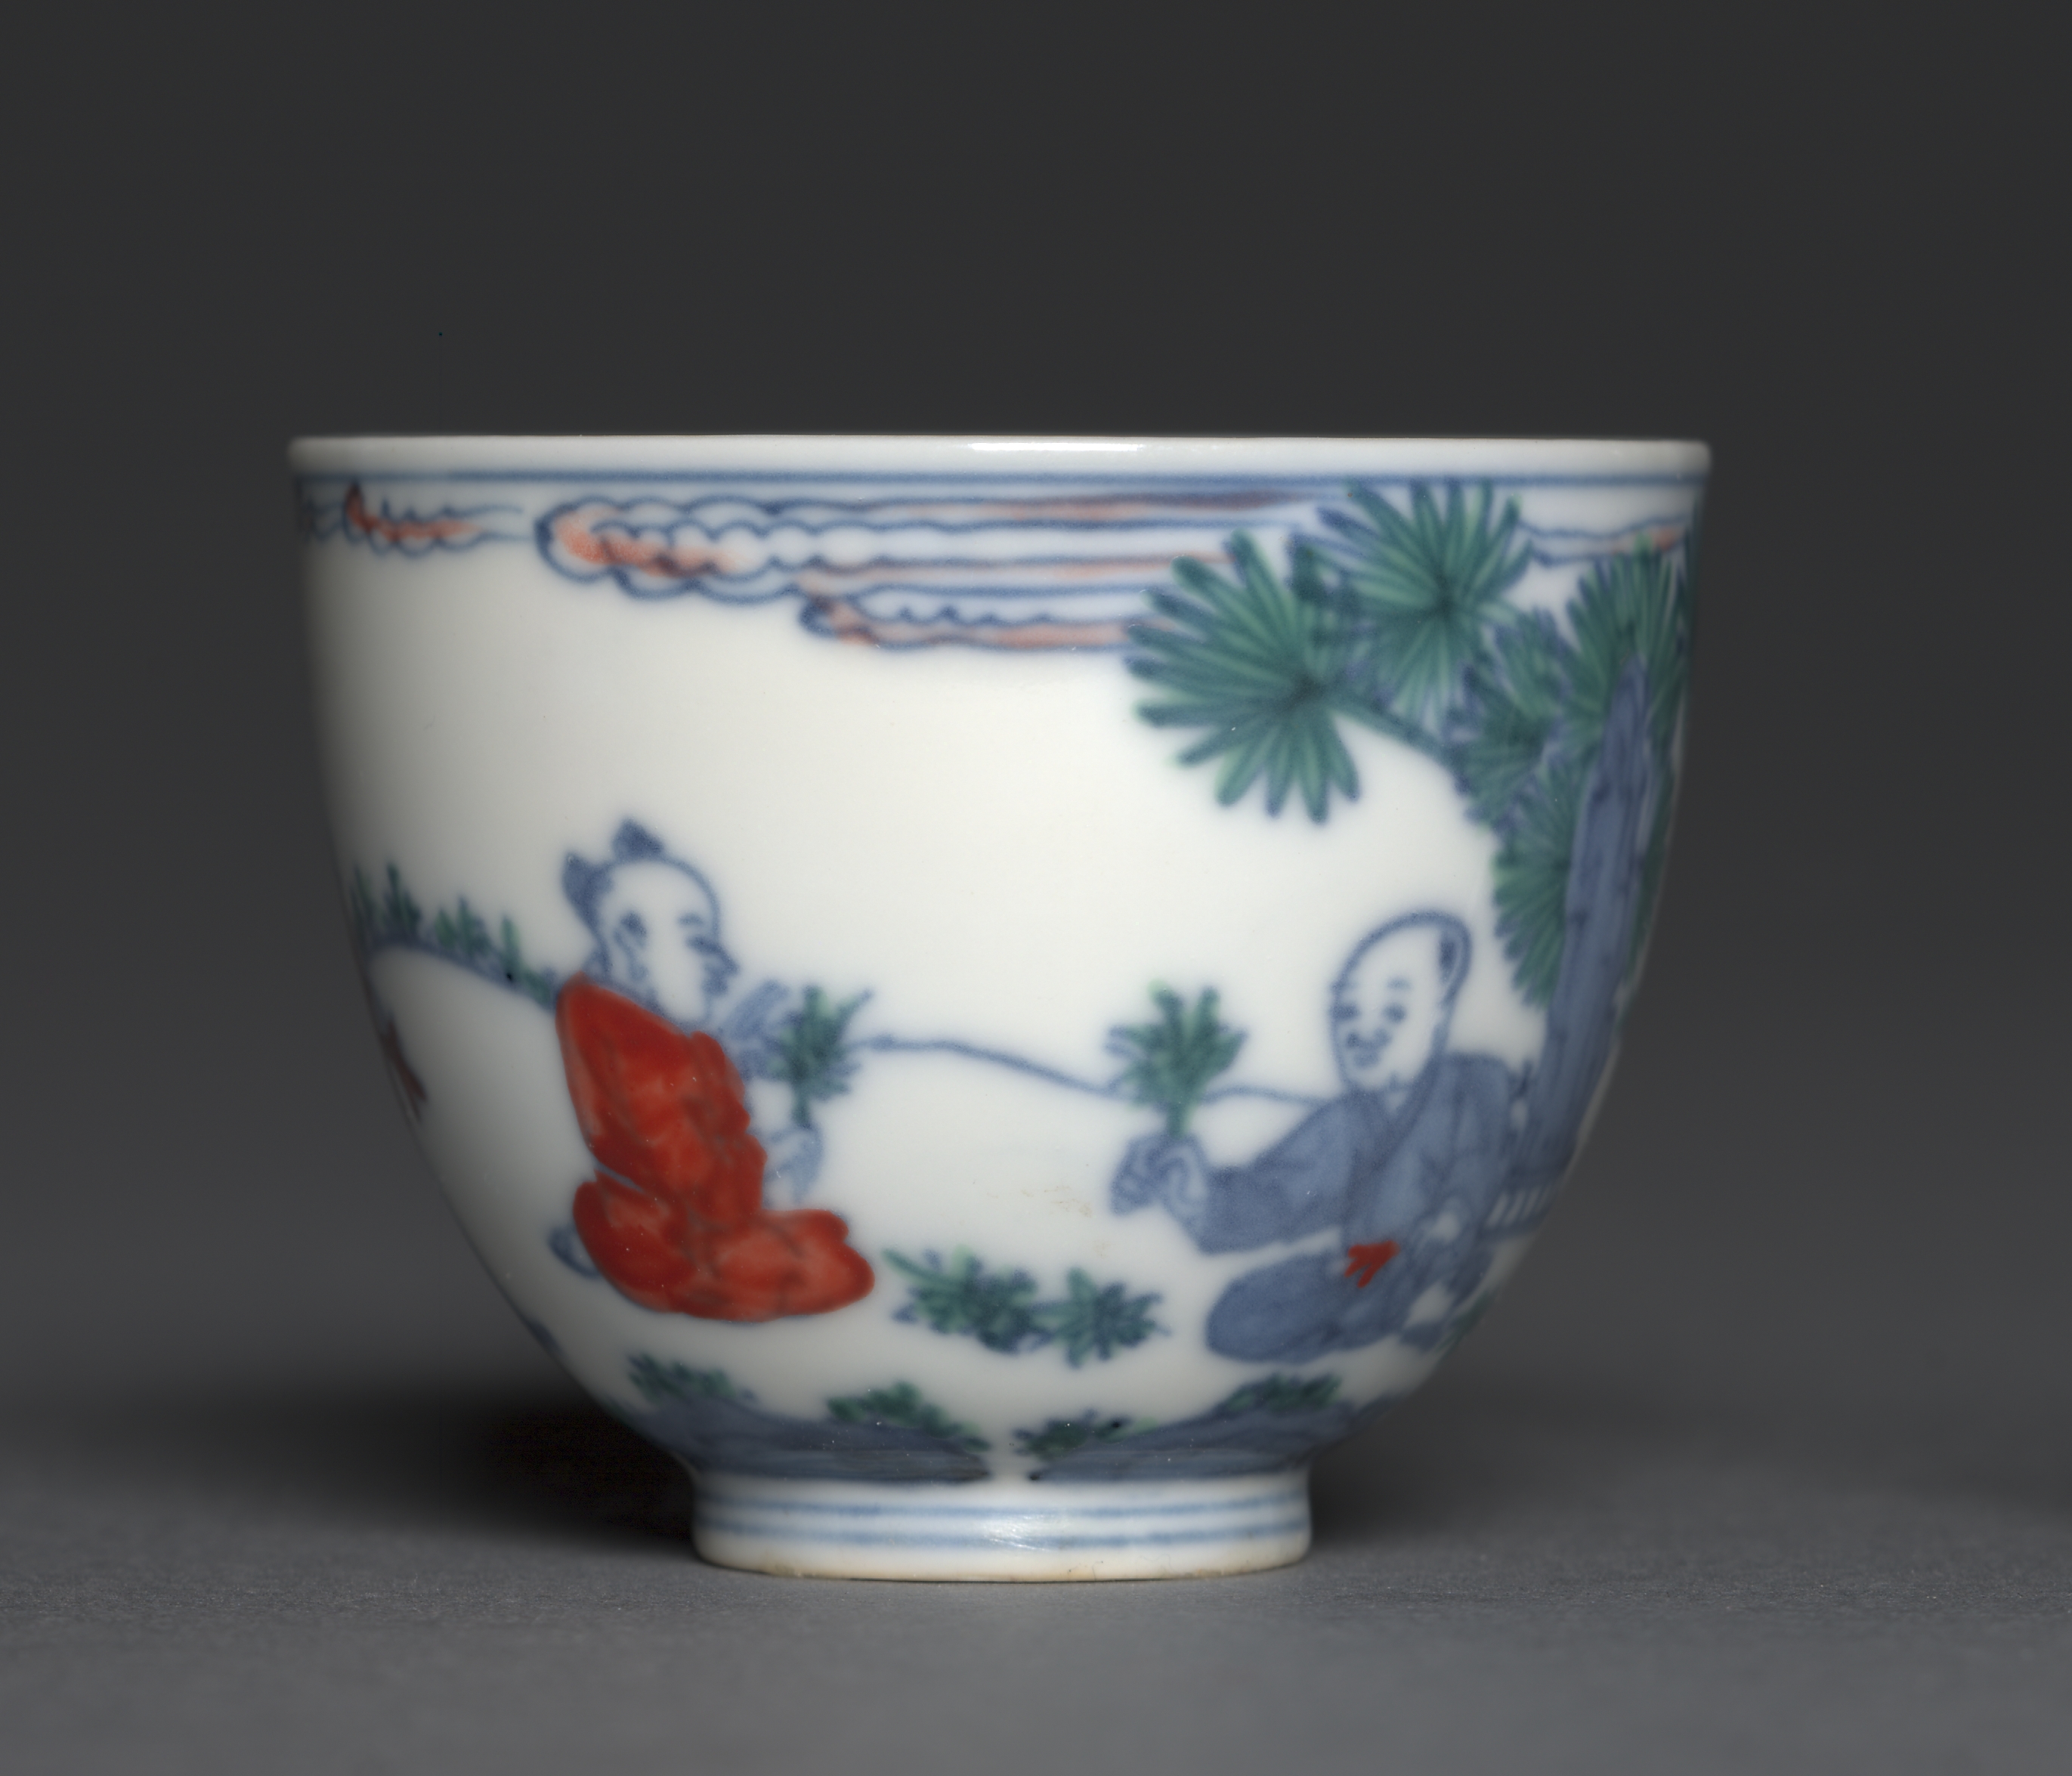 印有孩子玩耍图案的酒杯 by 未知艺术家  - 1465–87 - 4.8 厘米 克利夫兰艺术博物馆